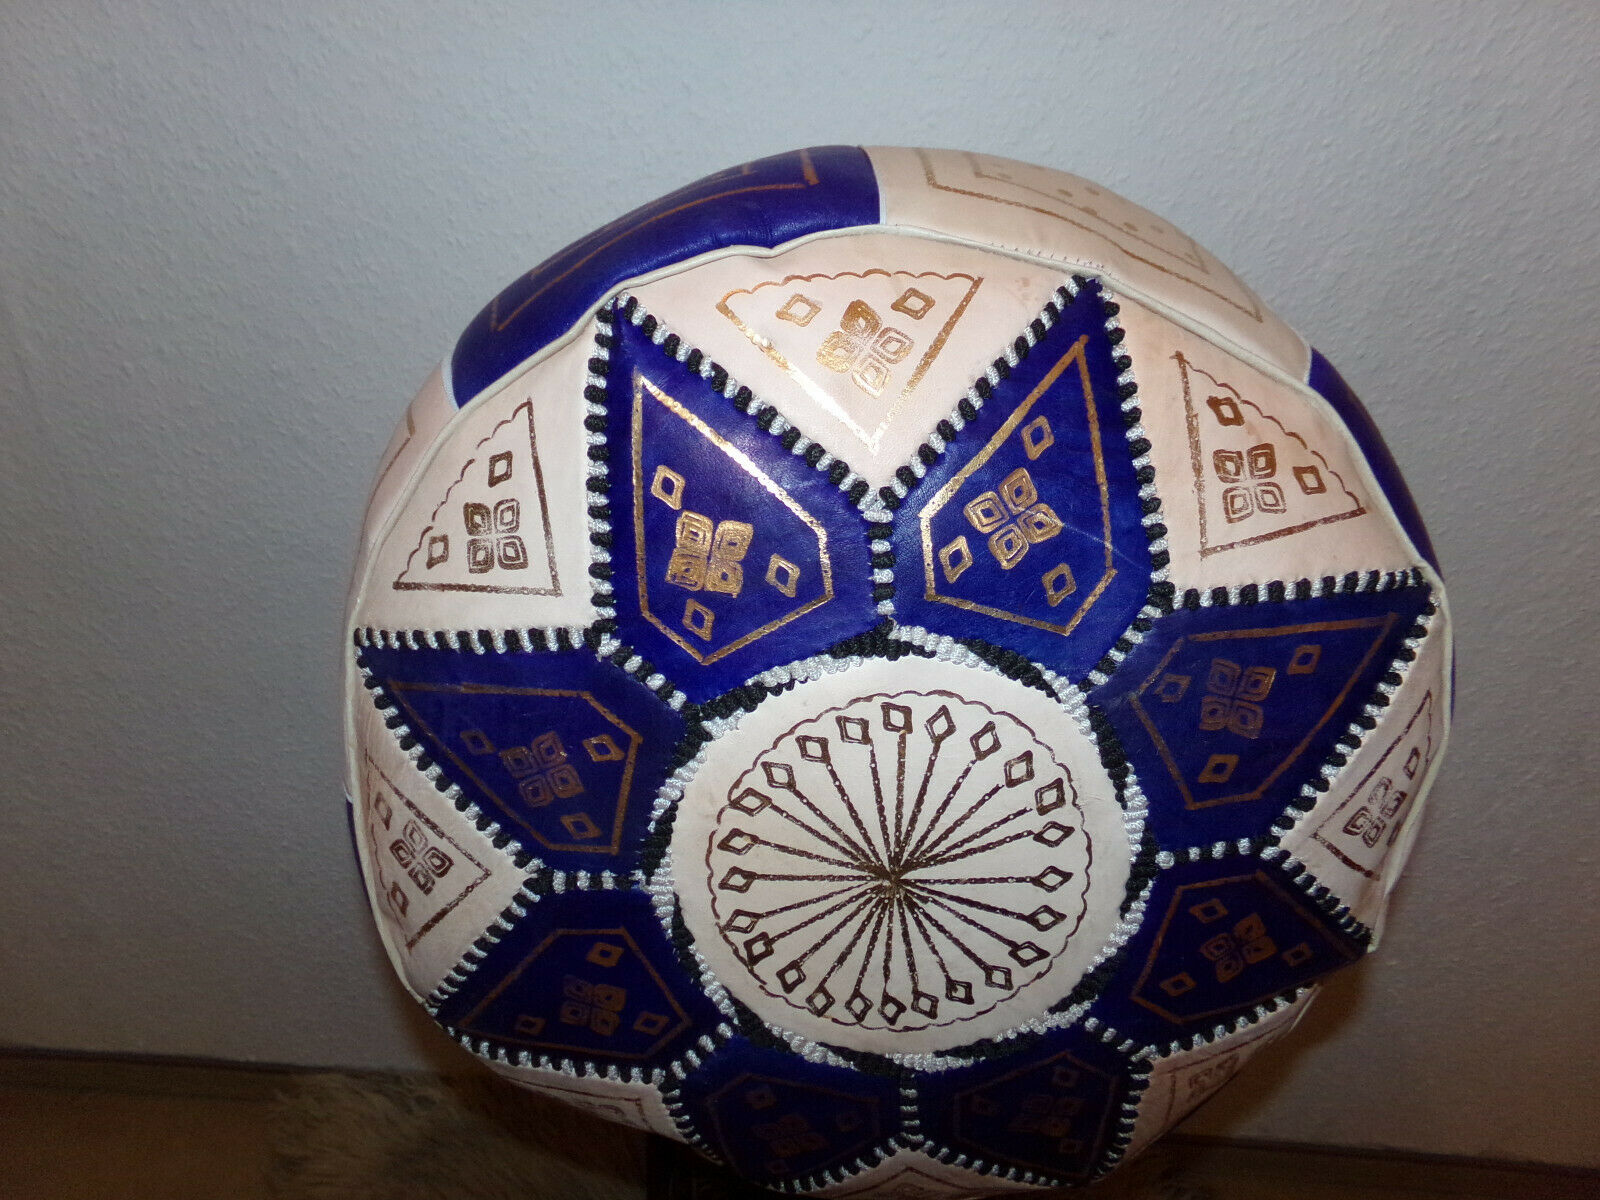 Marokkanische Orientalische Sitzkissen aus echtem Leder inkl. Füllung